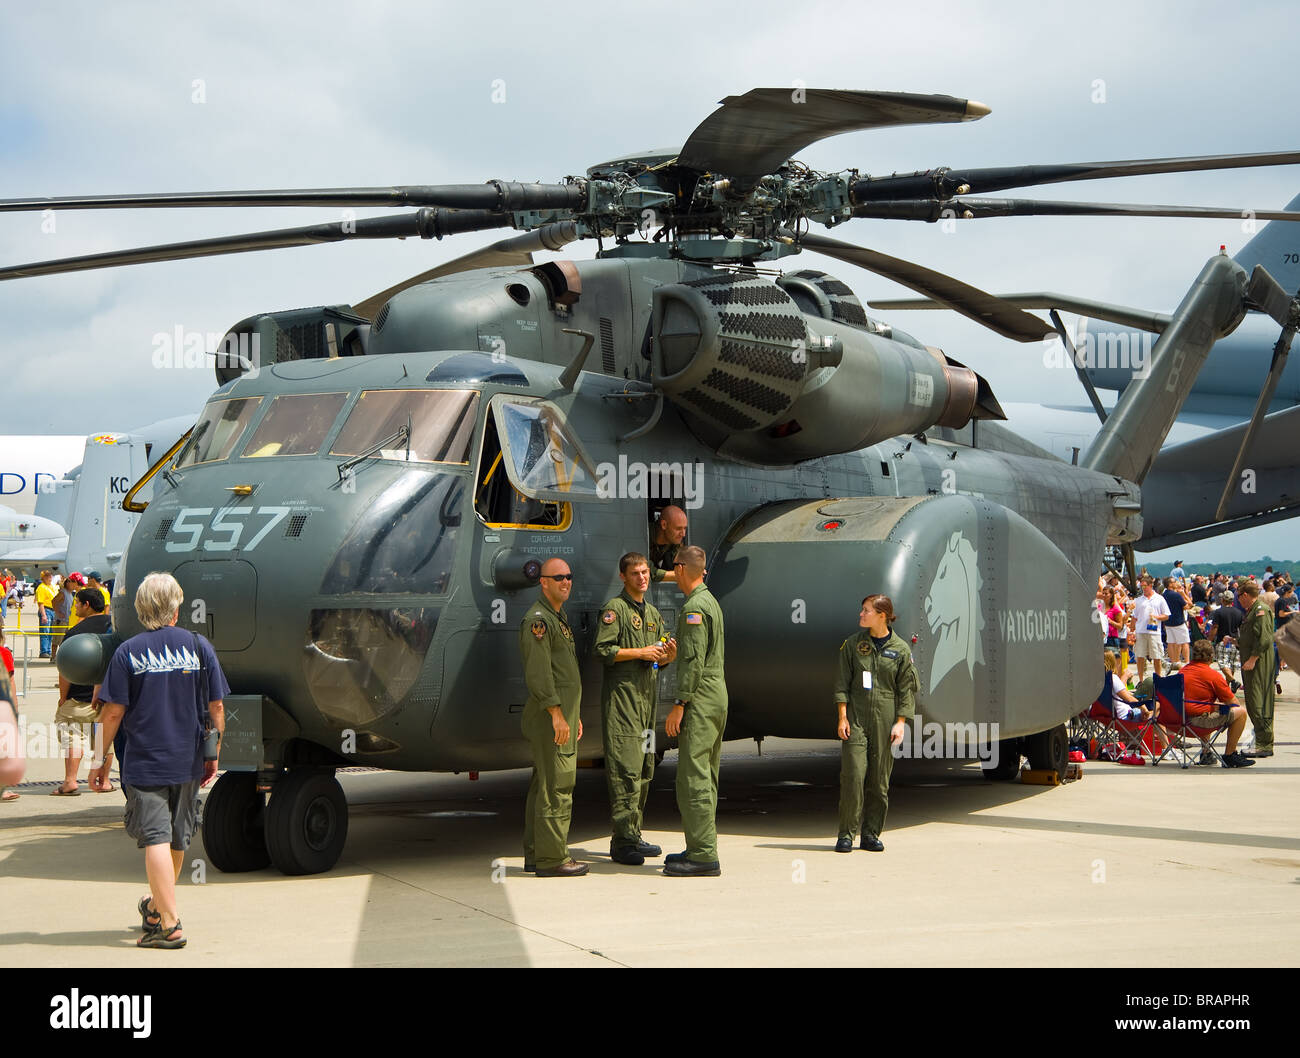 Piloten vor MH-53 MH53 Sea Dragon Hubschrauber, statische Anzeige bei Air Show Luft Fest airfest Stockfoto